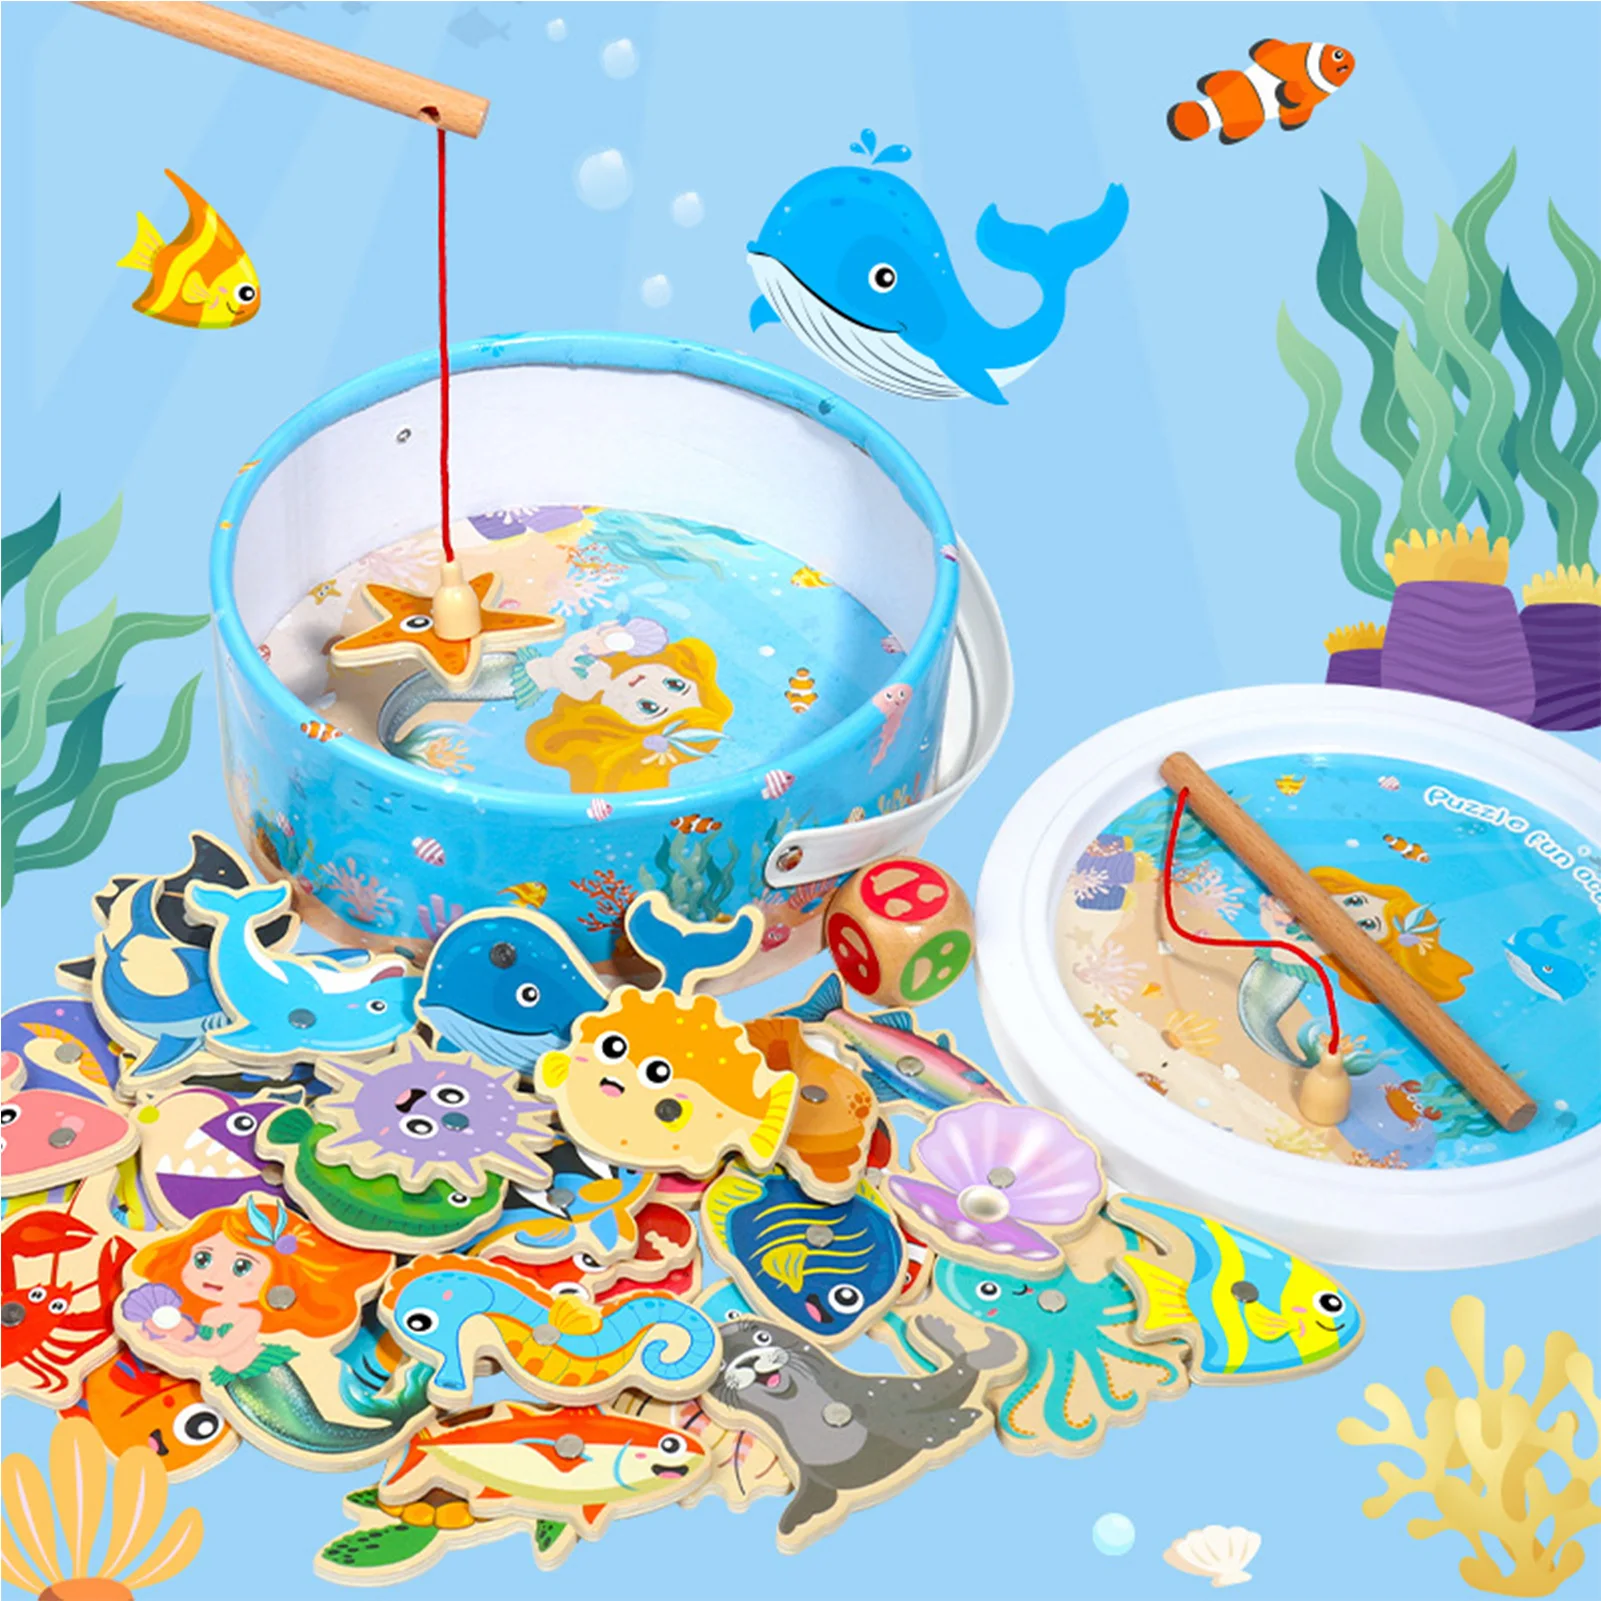 

Деревянная Магнитная рыболовная игрушка, познавательная рыболовная удочка, игрушка для малышей, игрушки Монтессори для раннего развития, интерактивная игра для родителей и детей